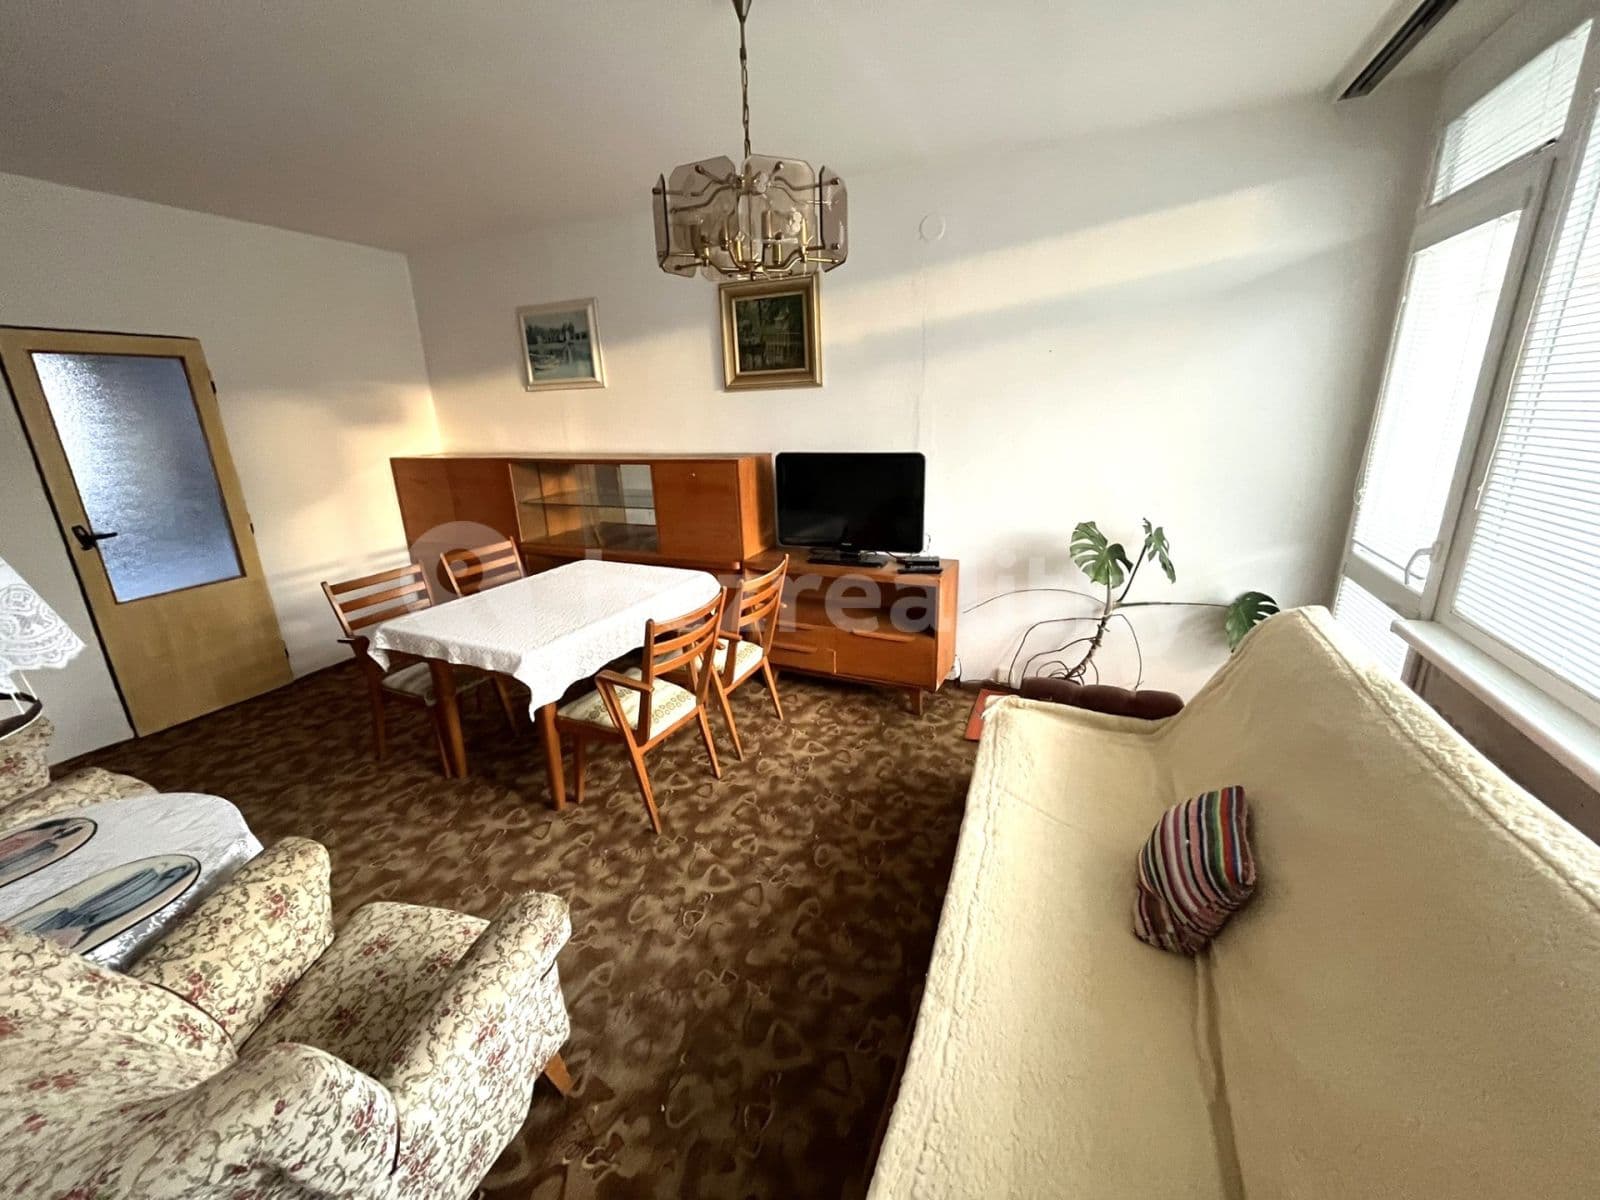 4 bedroom flat for sale, 77 m², Na Výšině, Jablonec nad Nisou, Liberecký Region